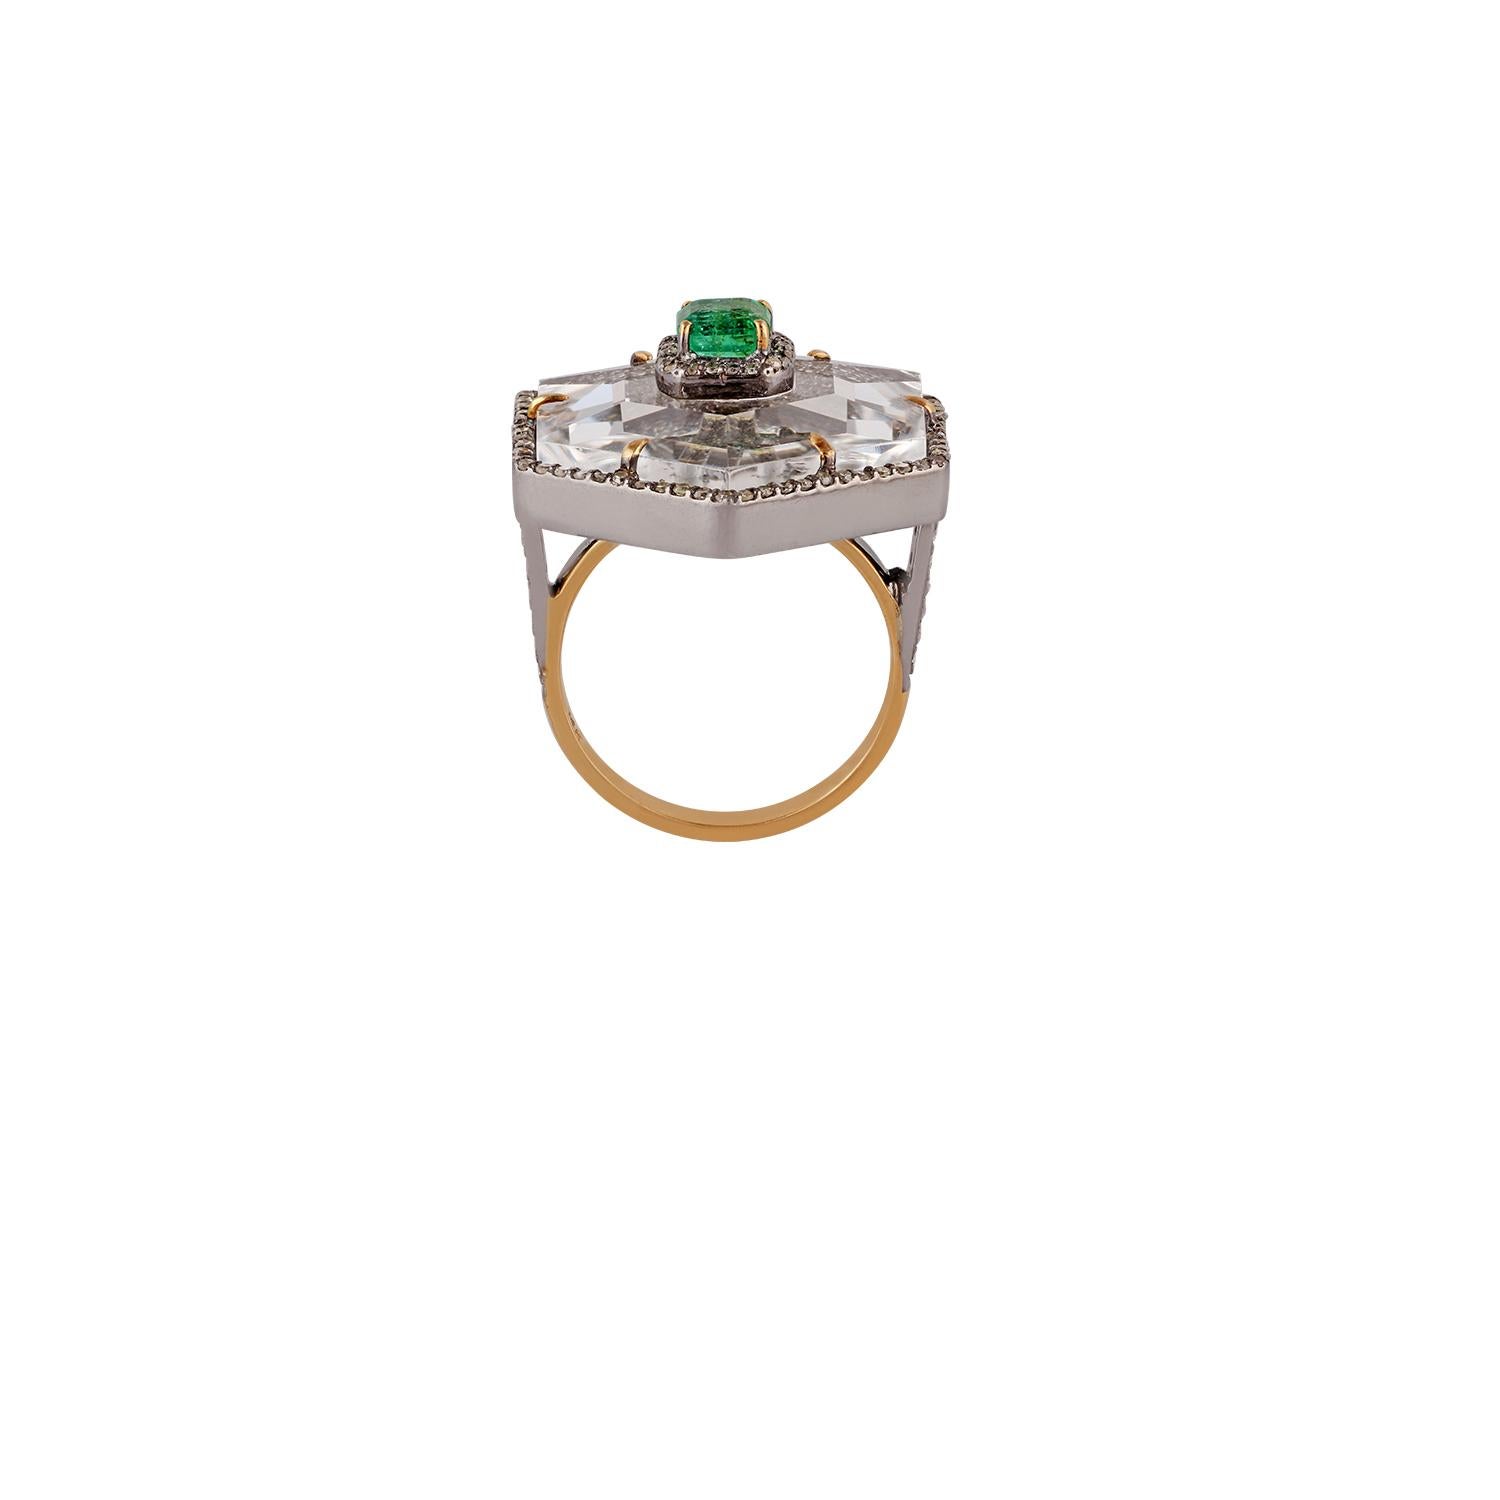 Emerald - 0.62 Carat
Crystal - 13.97 Carats
Diamond - 1.73 Carats
Gold - 2.31 Grams
Silver - 6.41 Grams